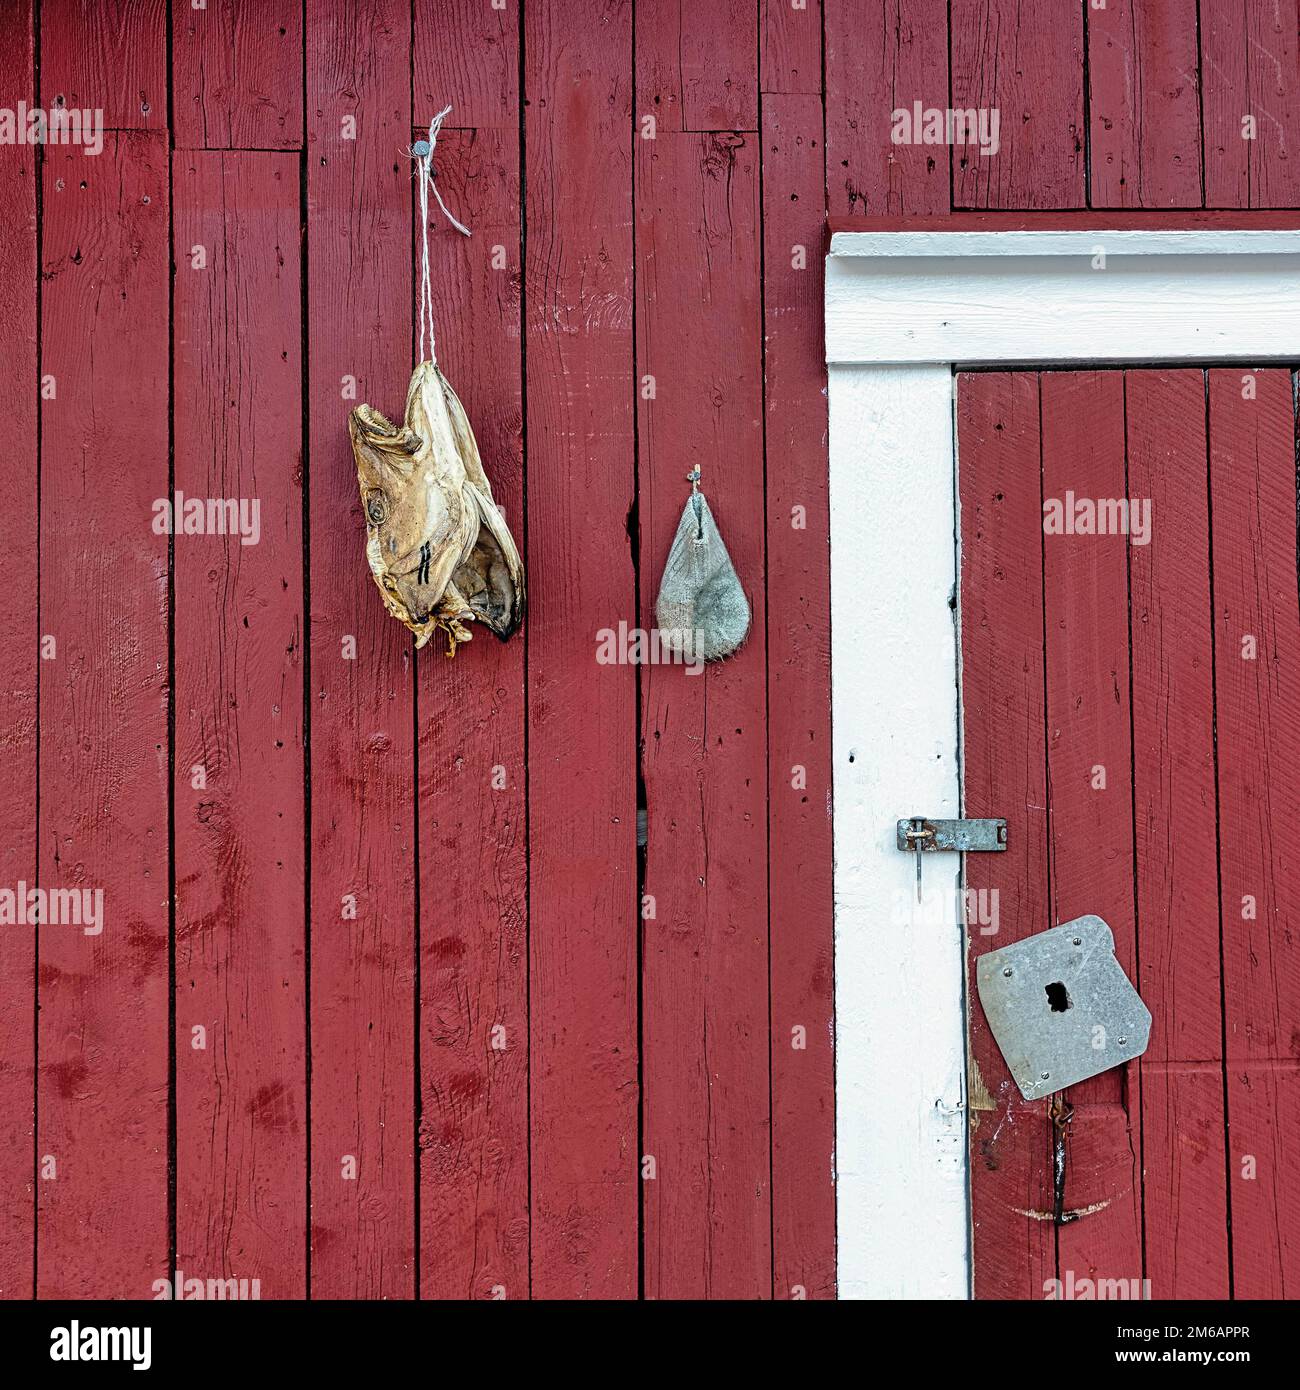 Rote Fischerhütte, Fischkopf hängt zum Trocknen, Stockfische, Details der Fassade, Dekoration im Freilichtmuseum, Fischerdorf Nusfjord Stockfoto